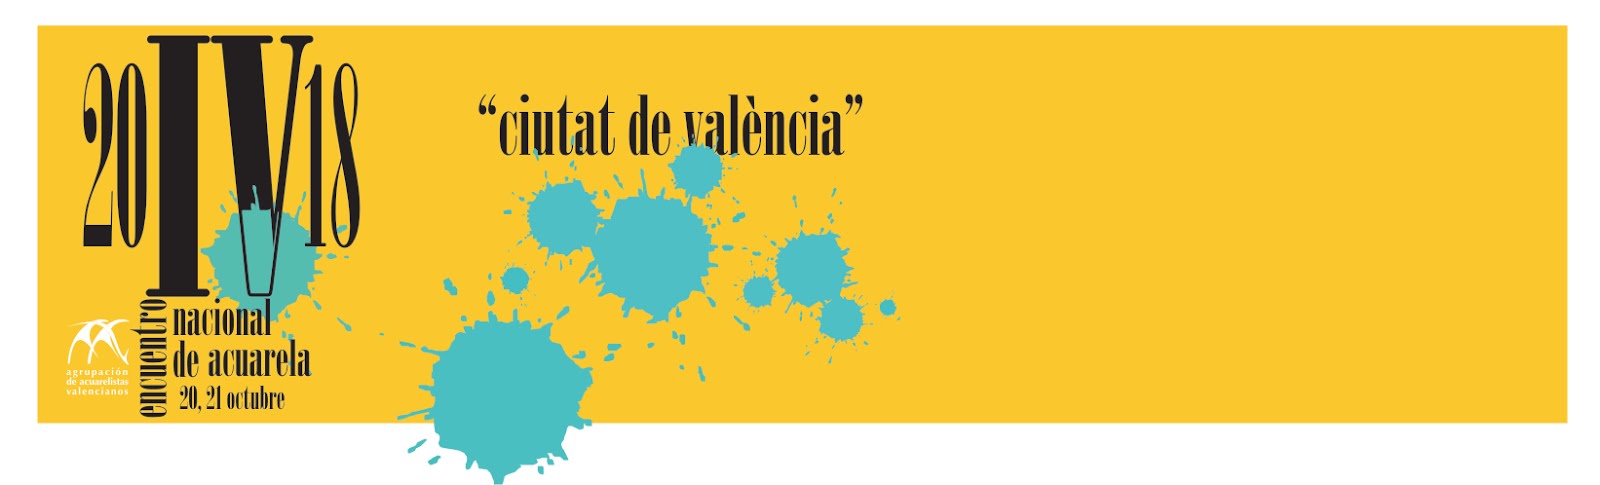 IV Encuentro nacional de acuarelistas "Ciutat de València"